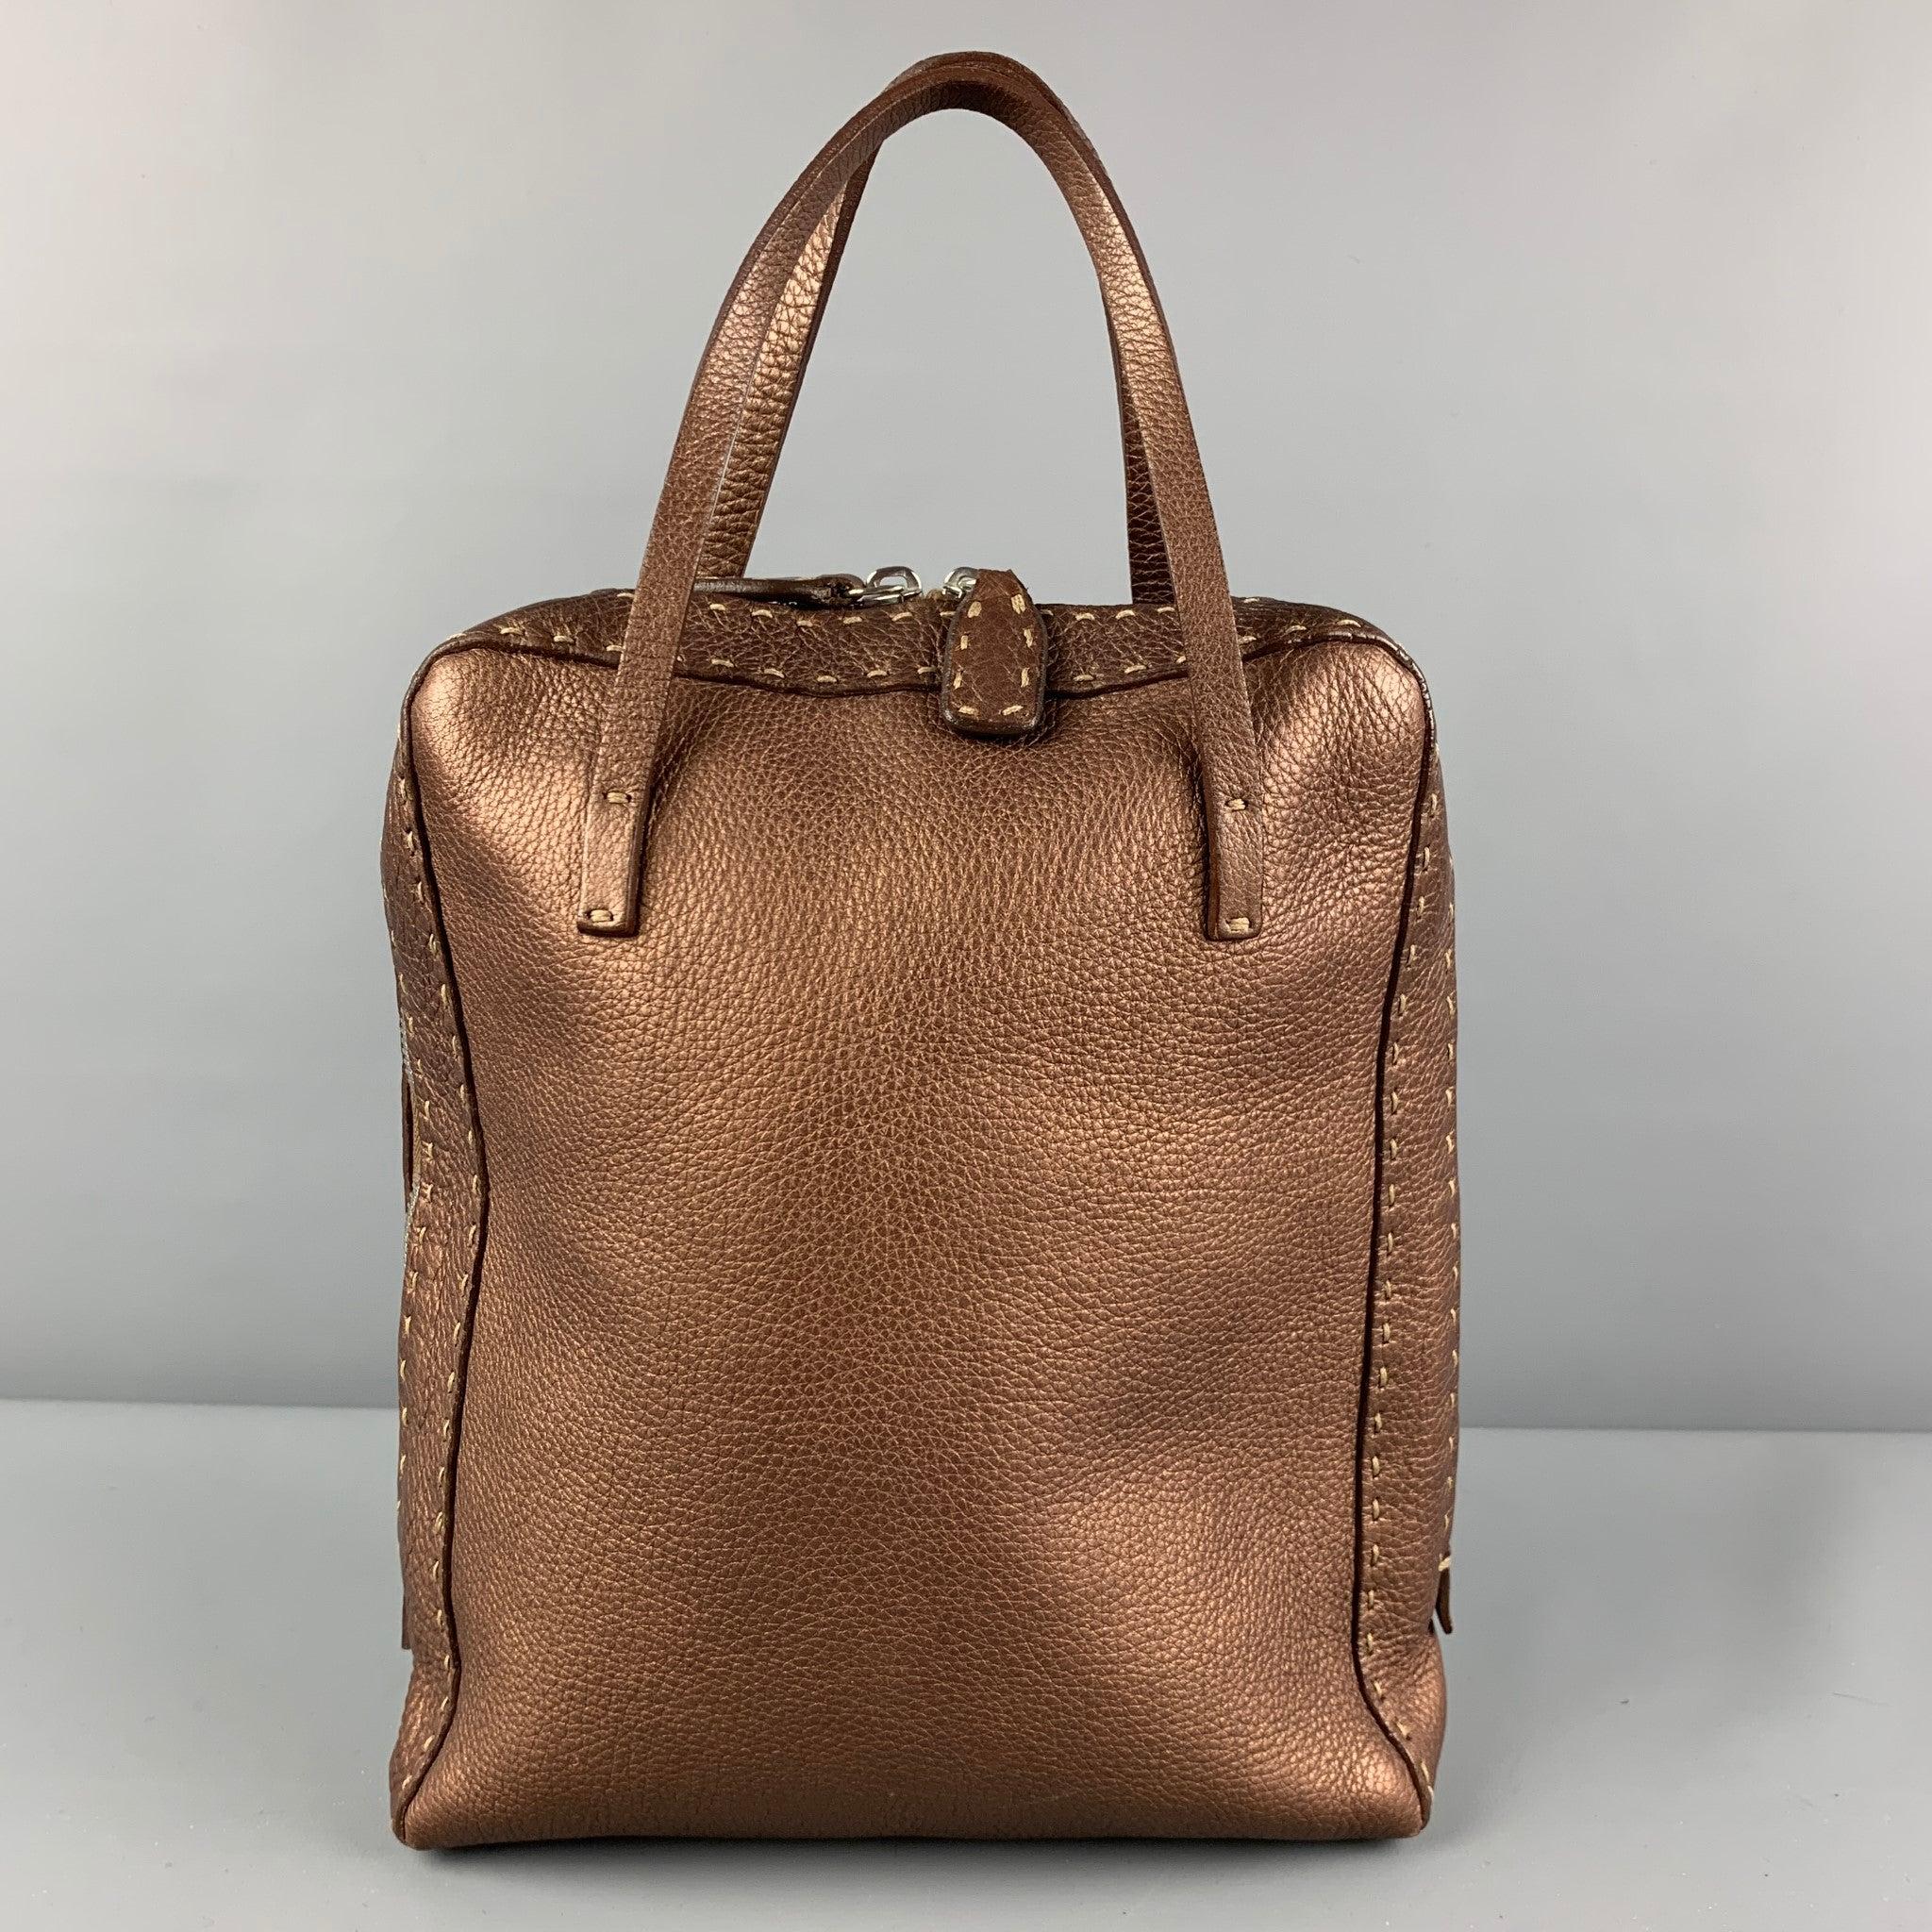 FENDI SELLERIA N49-11859 Copper Contrast Stitch Pebble Grain Leather Handbag In Good Condition For Sale In San Francisco, CA